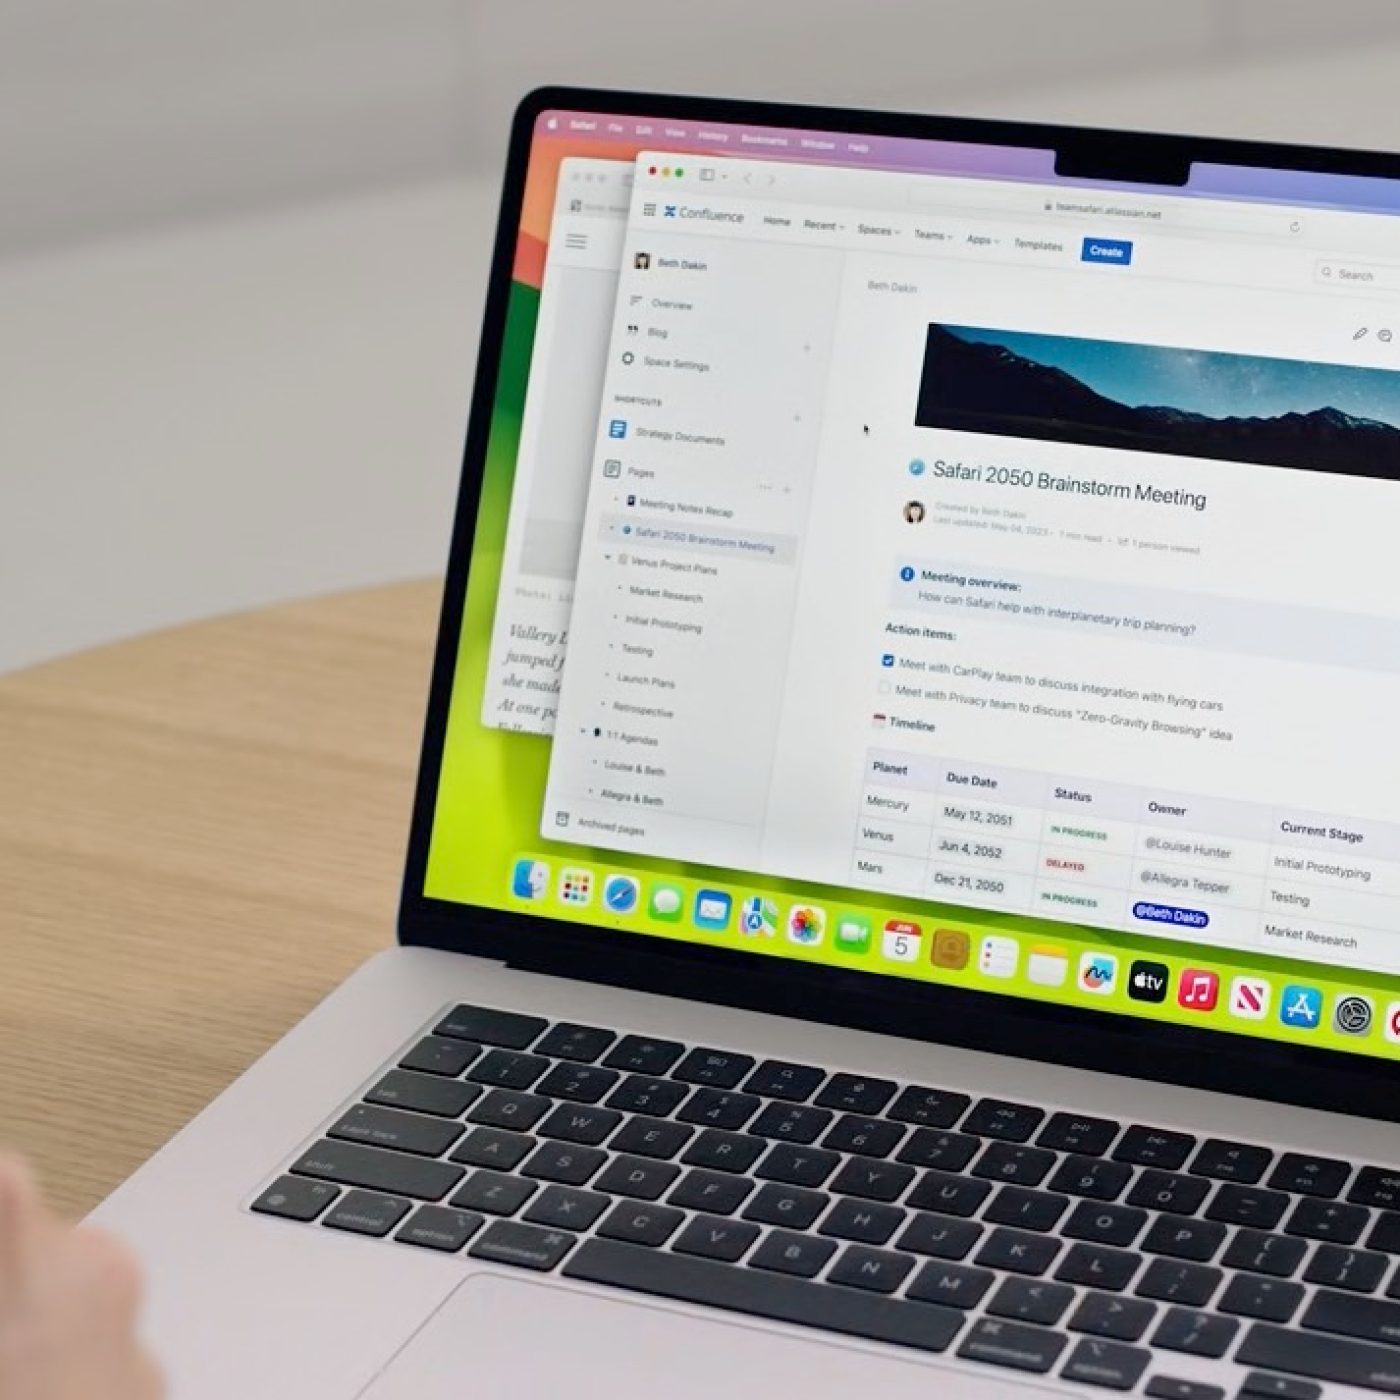 macOS Sonoma já está disponível para usuários de Mac